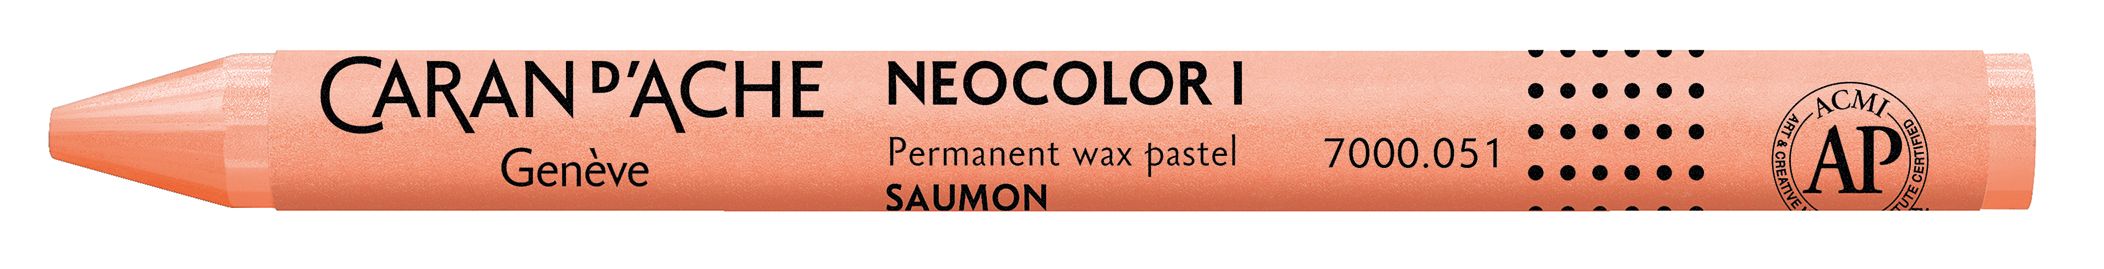 CARAN D'ACHE Crayons de cire Neocolor 1 7000.051 saumon